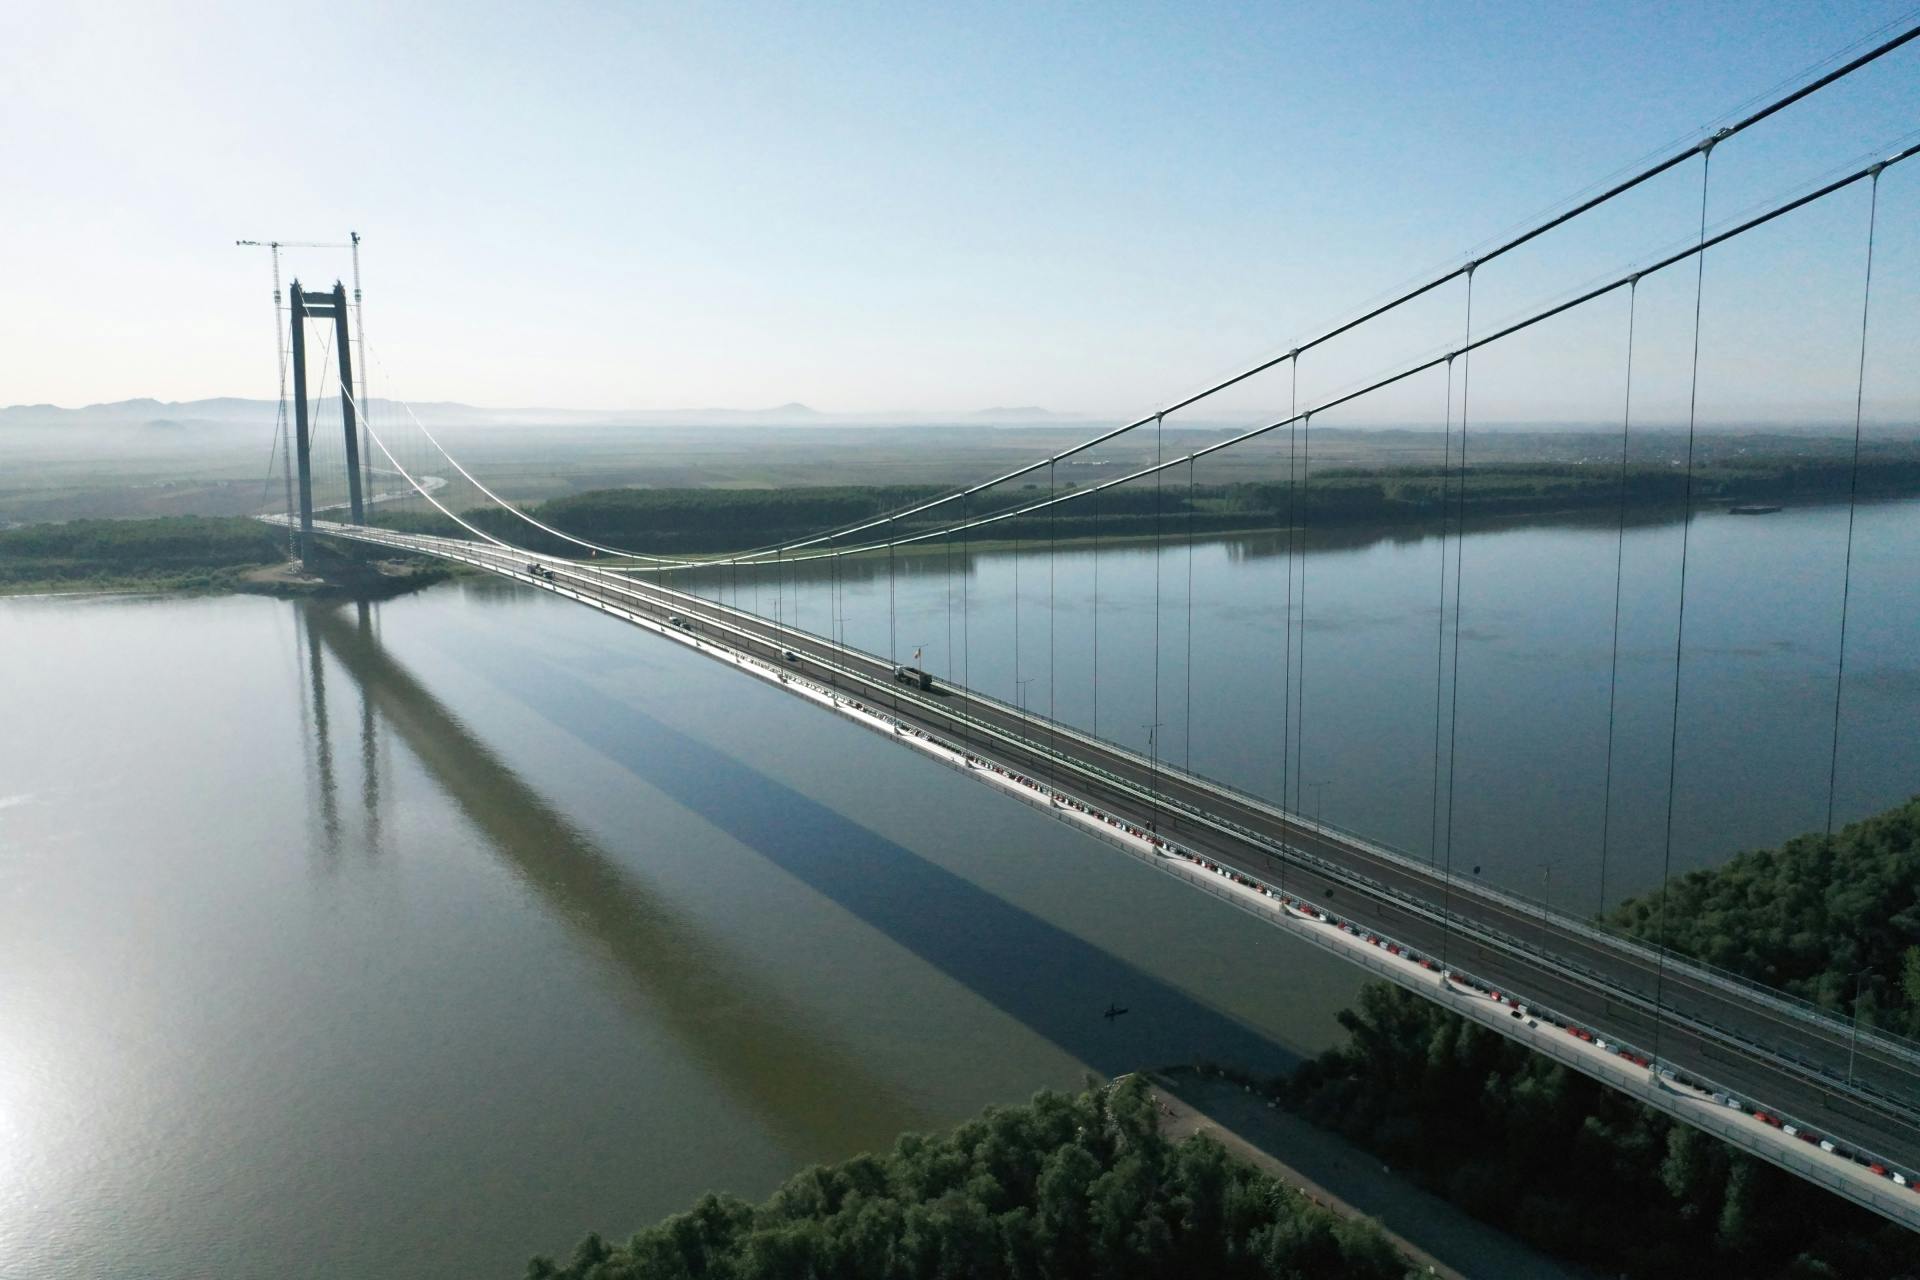 Bridge over the Danube River in Braila